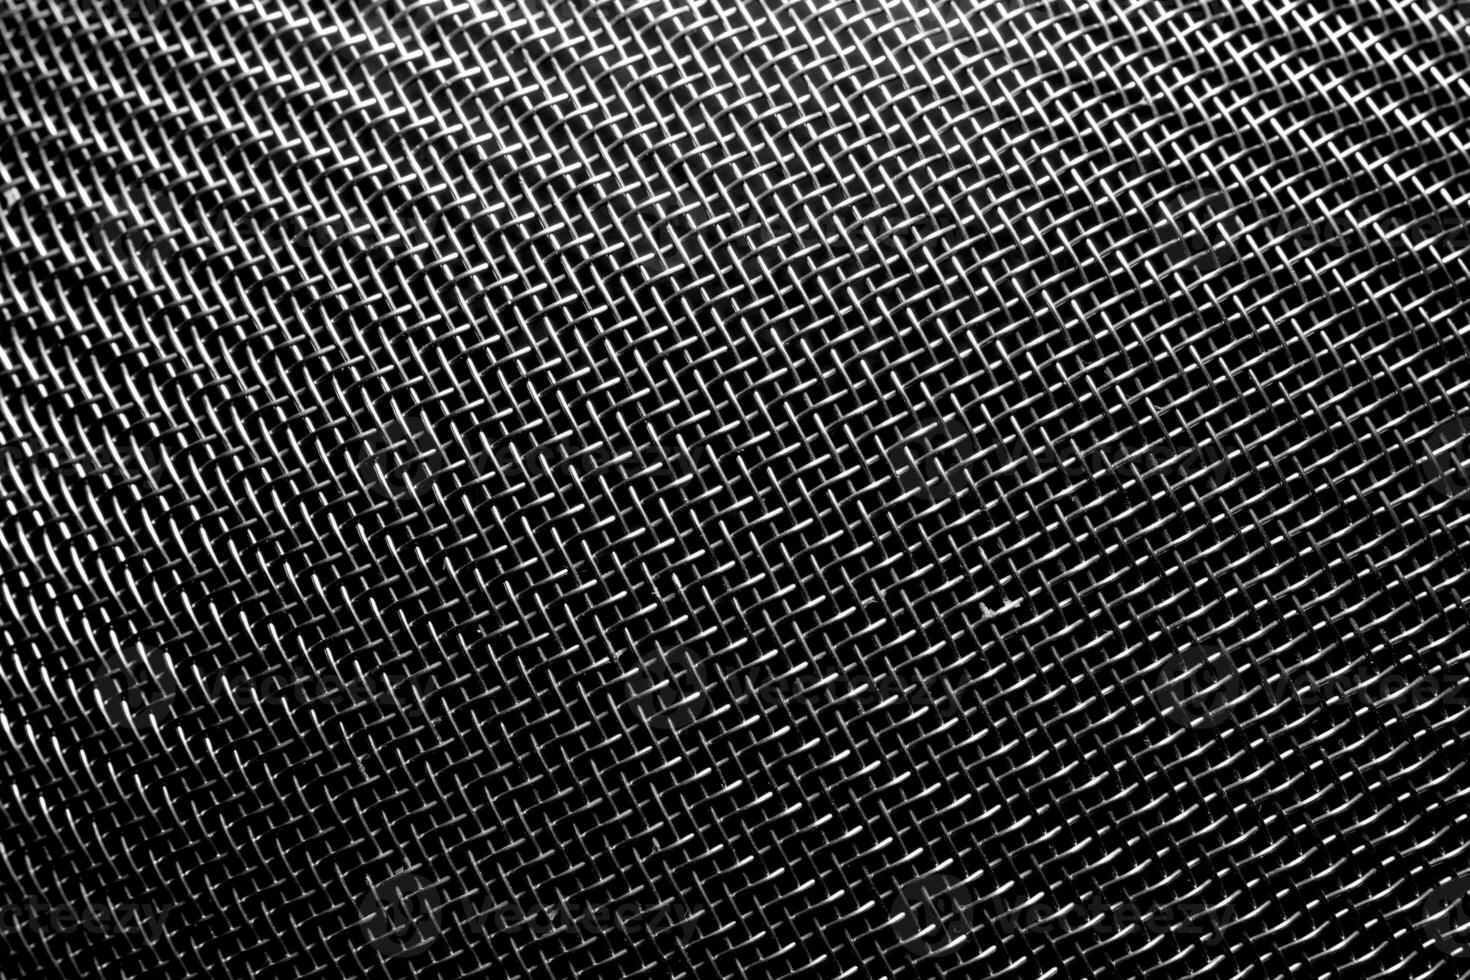 svartvit textur av en skinande metall durkslag eller galler. abstrakt bakgrund. foto